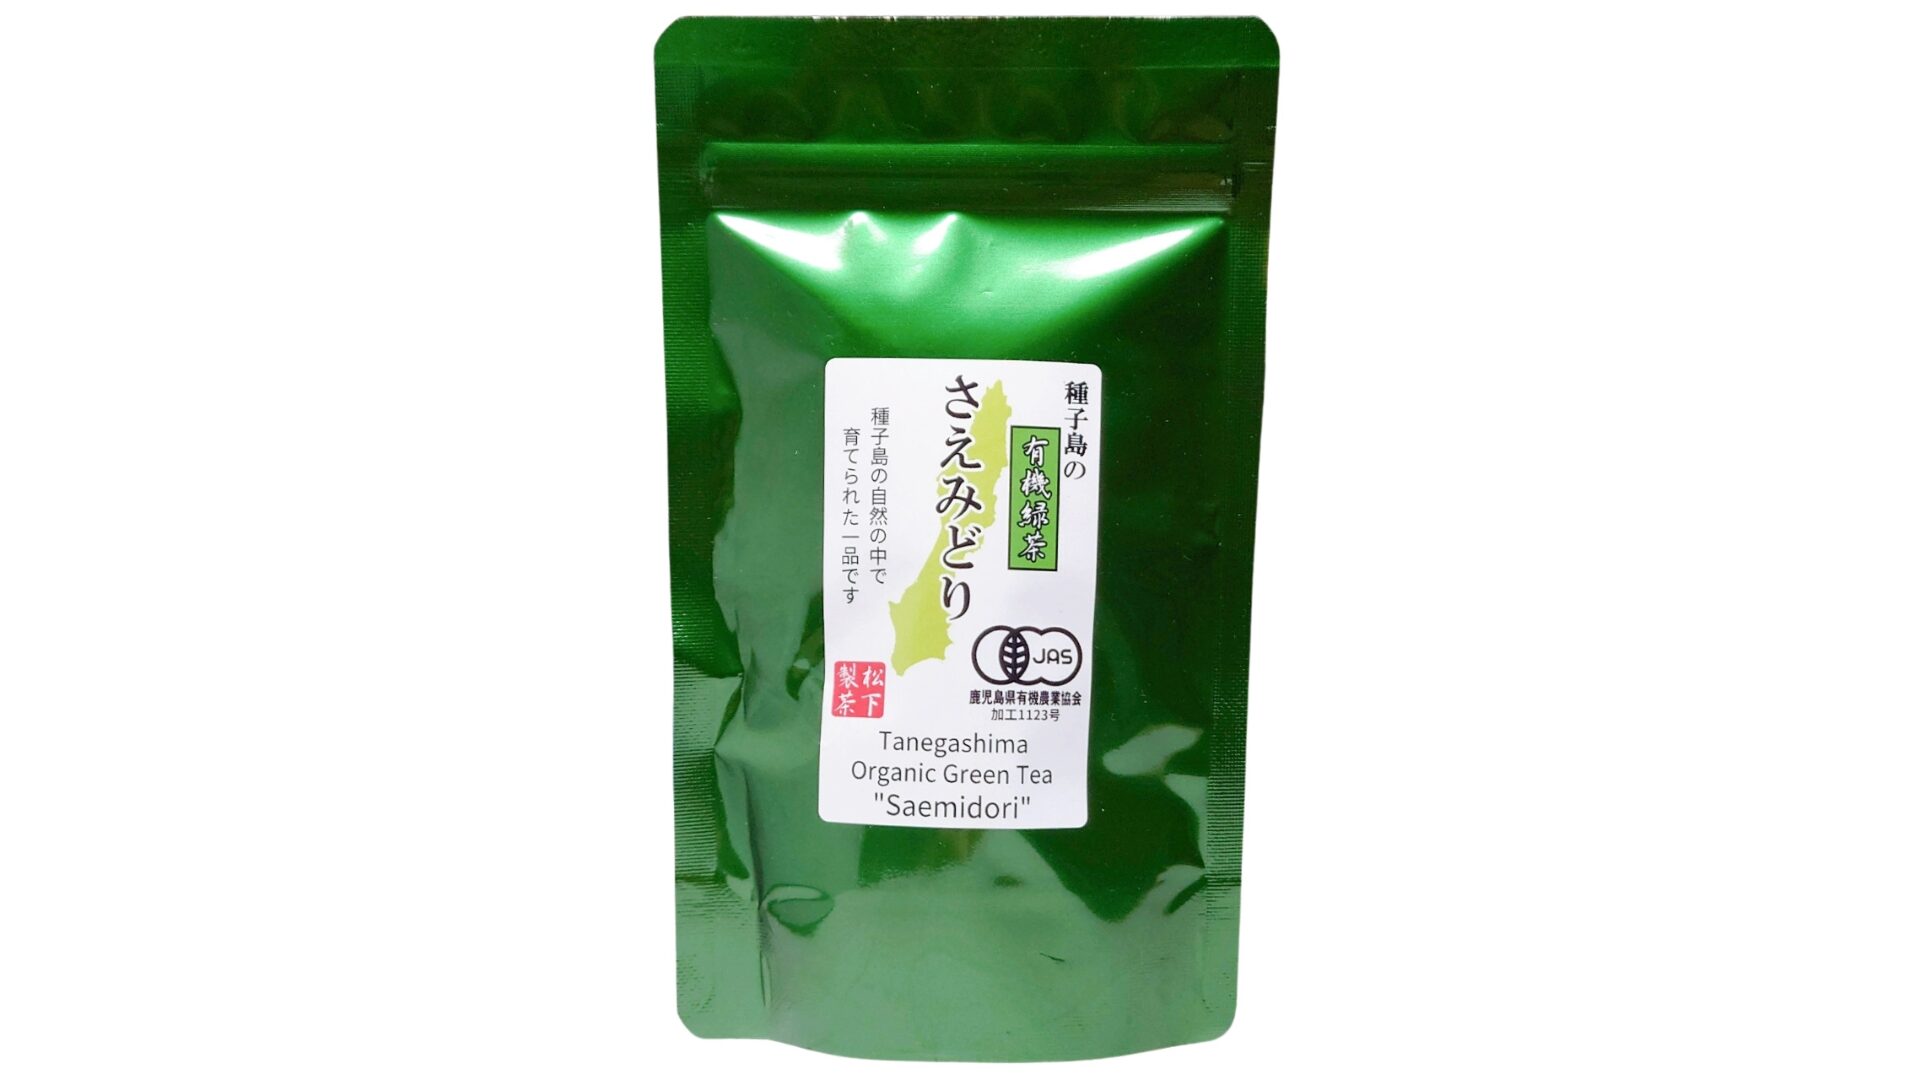 松下製茶 種子島の有機緑茶『さえみどり』 茶葉(リーフ) 100g